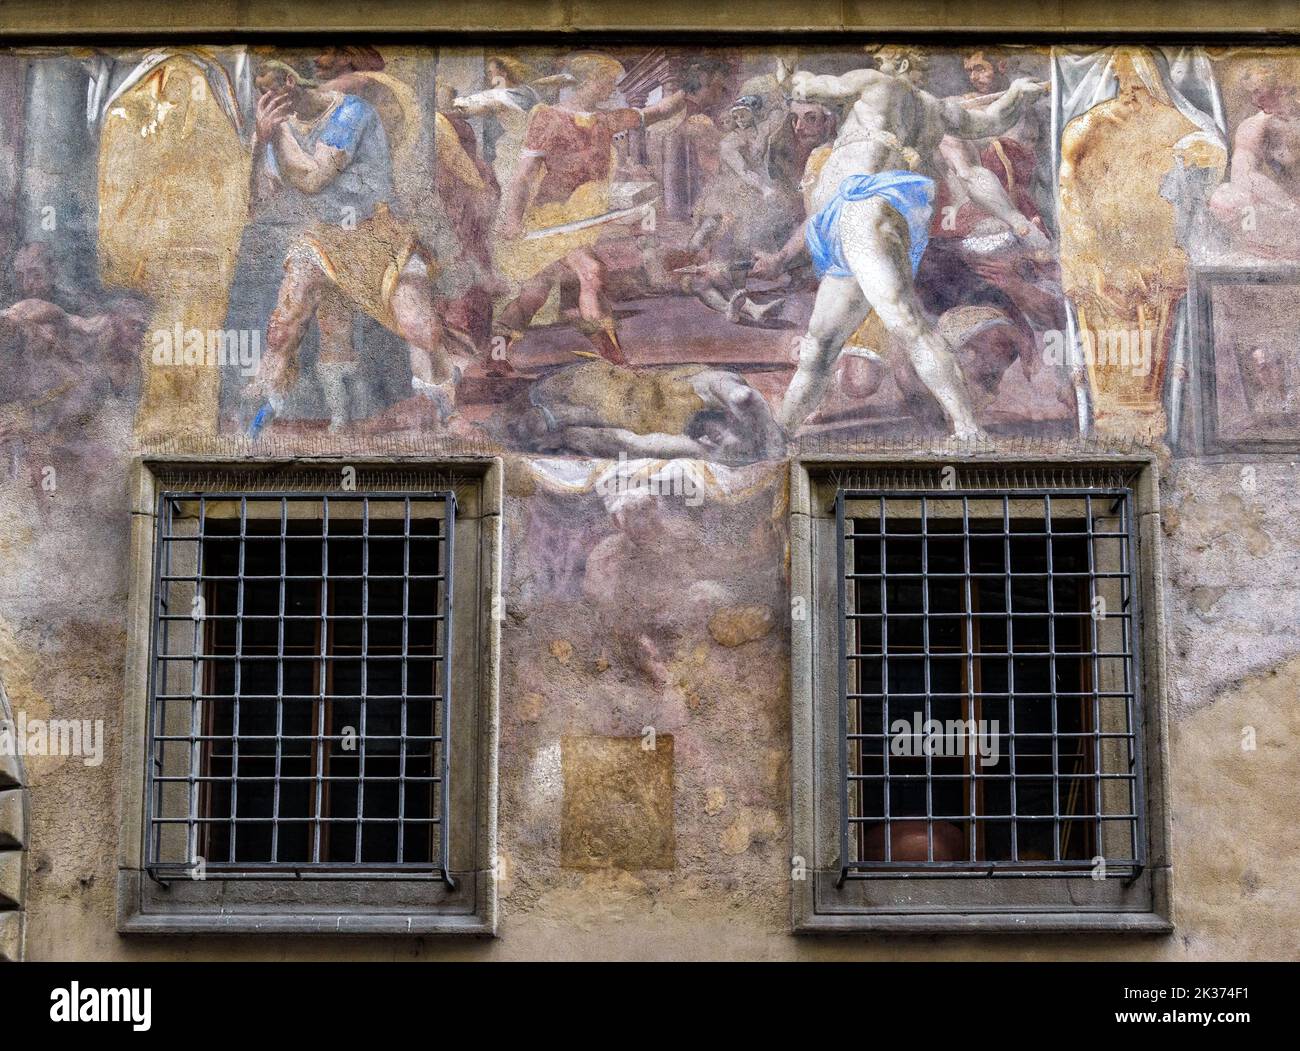 Vieille peinture sur le mur extérieur de la maison, fresque de la Renaissance extérieure, Florence, Italie. Façade peinte du bâtiment historique. Thème de l'art italien, ext Banque D'Images